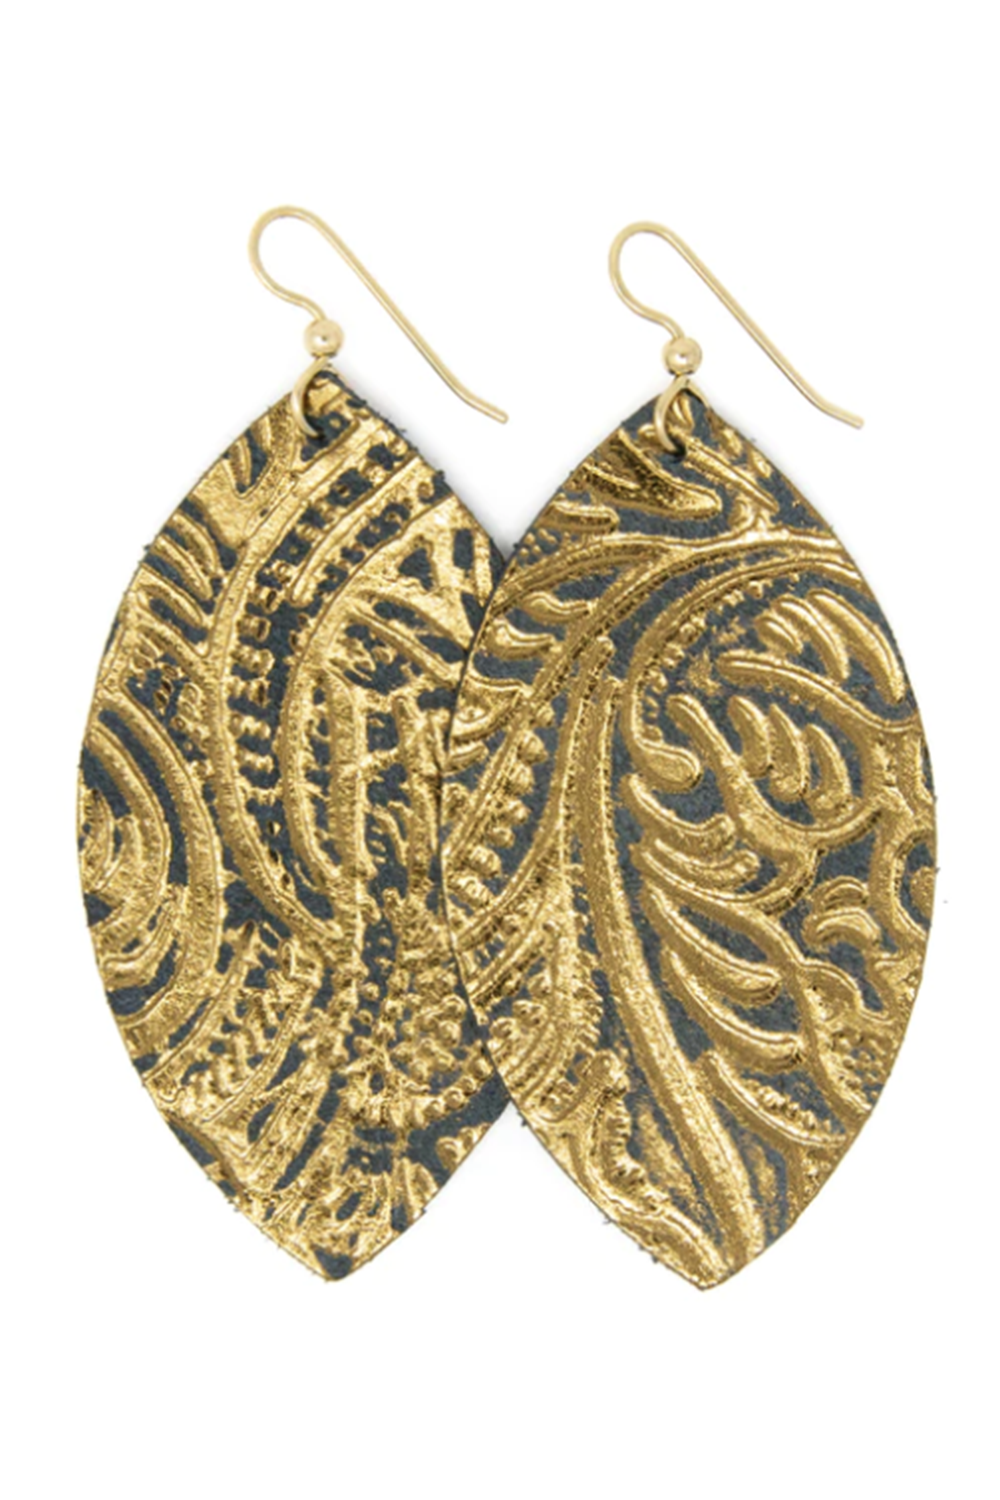 Keva Earring - Black & Bronze Carved